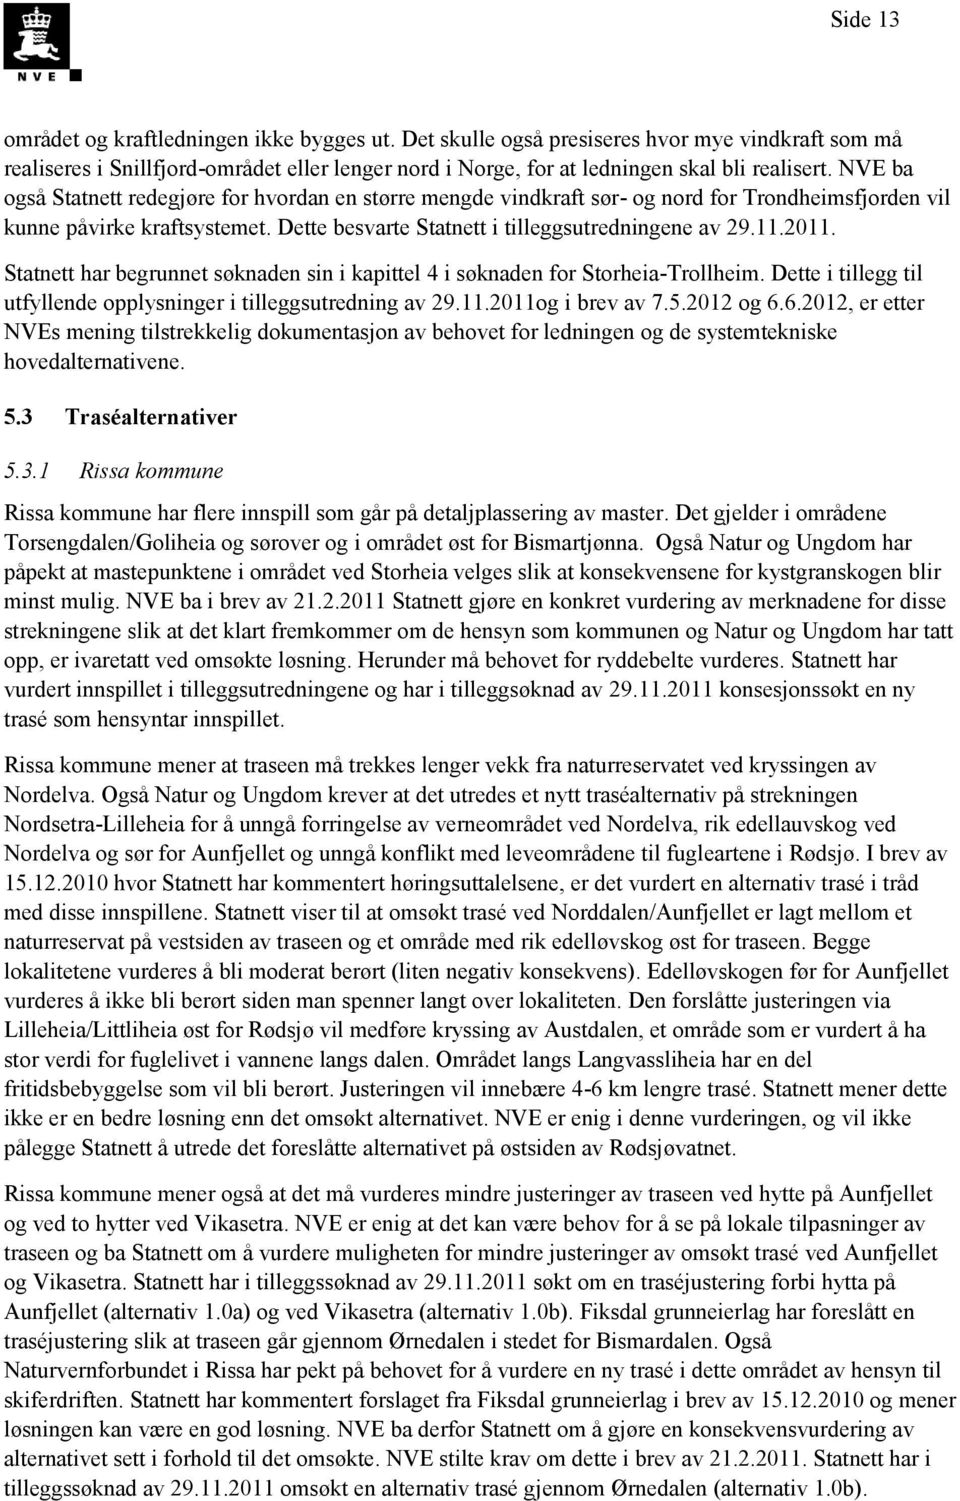 Statnett har begrunnet søknaden sin i kapittel 4 i søknaden for Storheia-Trollheim. Dette i tillegg til utfyllende opplysninger i tilleggsutredning av 29.11.2011og i brev av 7.5.2012 og 6.